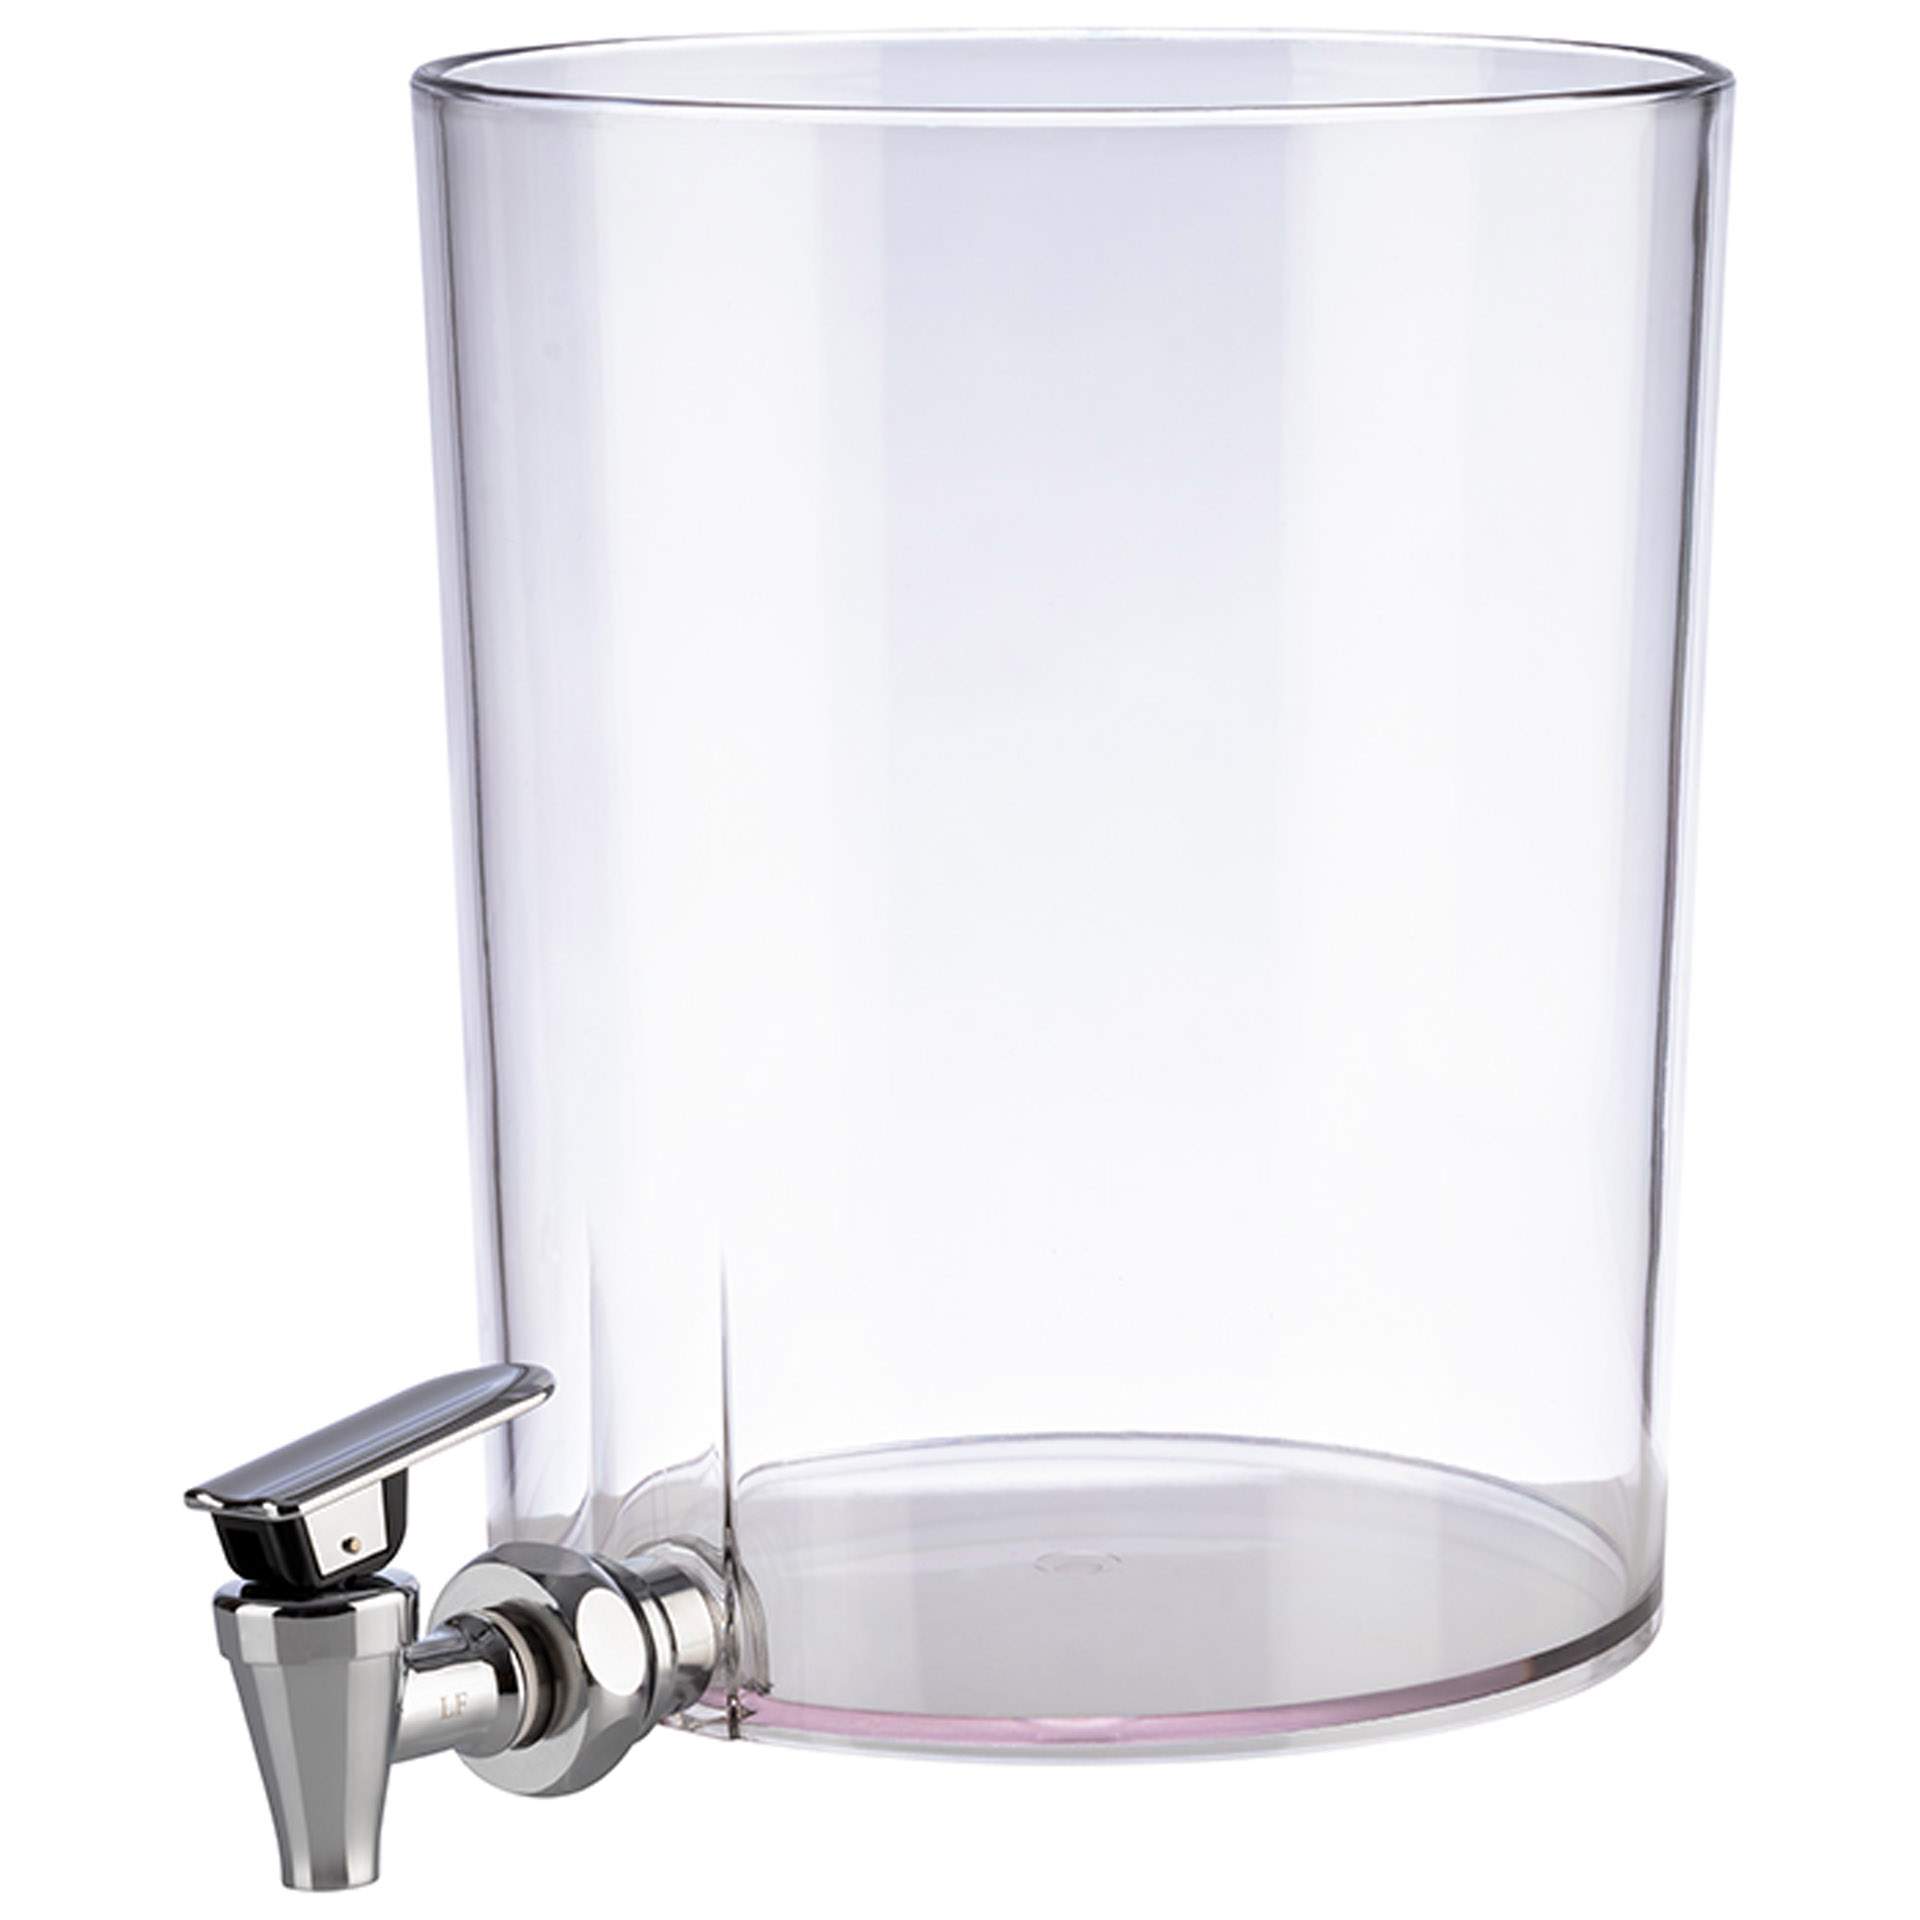 Behälter - mit Zapfhahn - Abm. 21,0 cm - Ø 17,5 cm - Inhalt 4,0 l - SAN - 10803-B